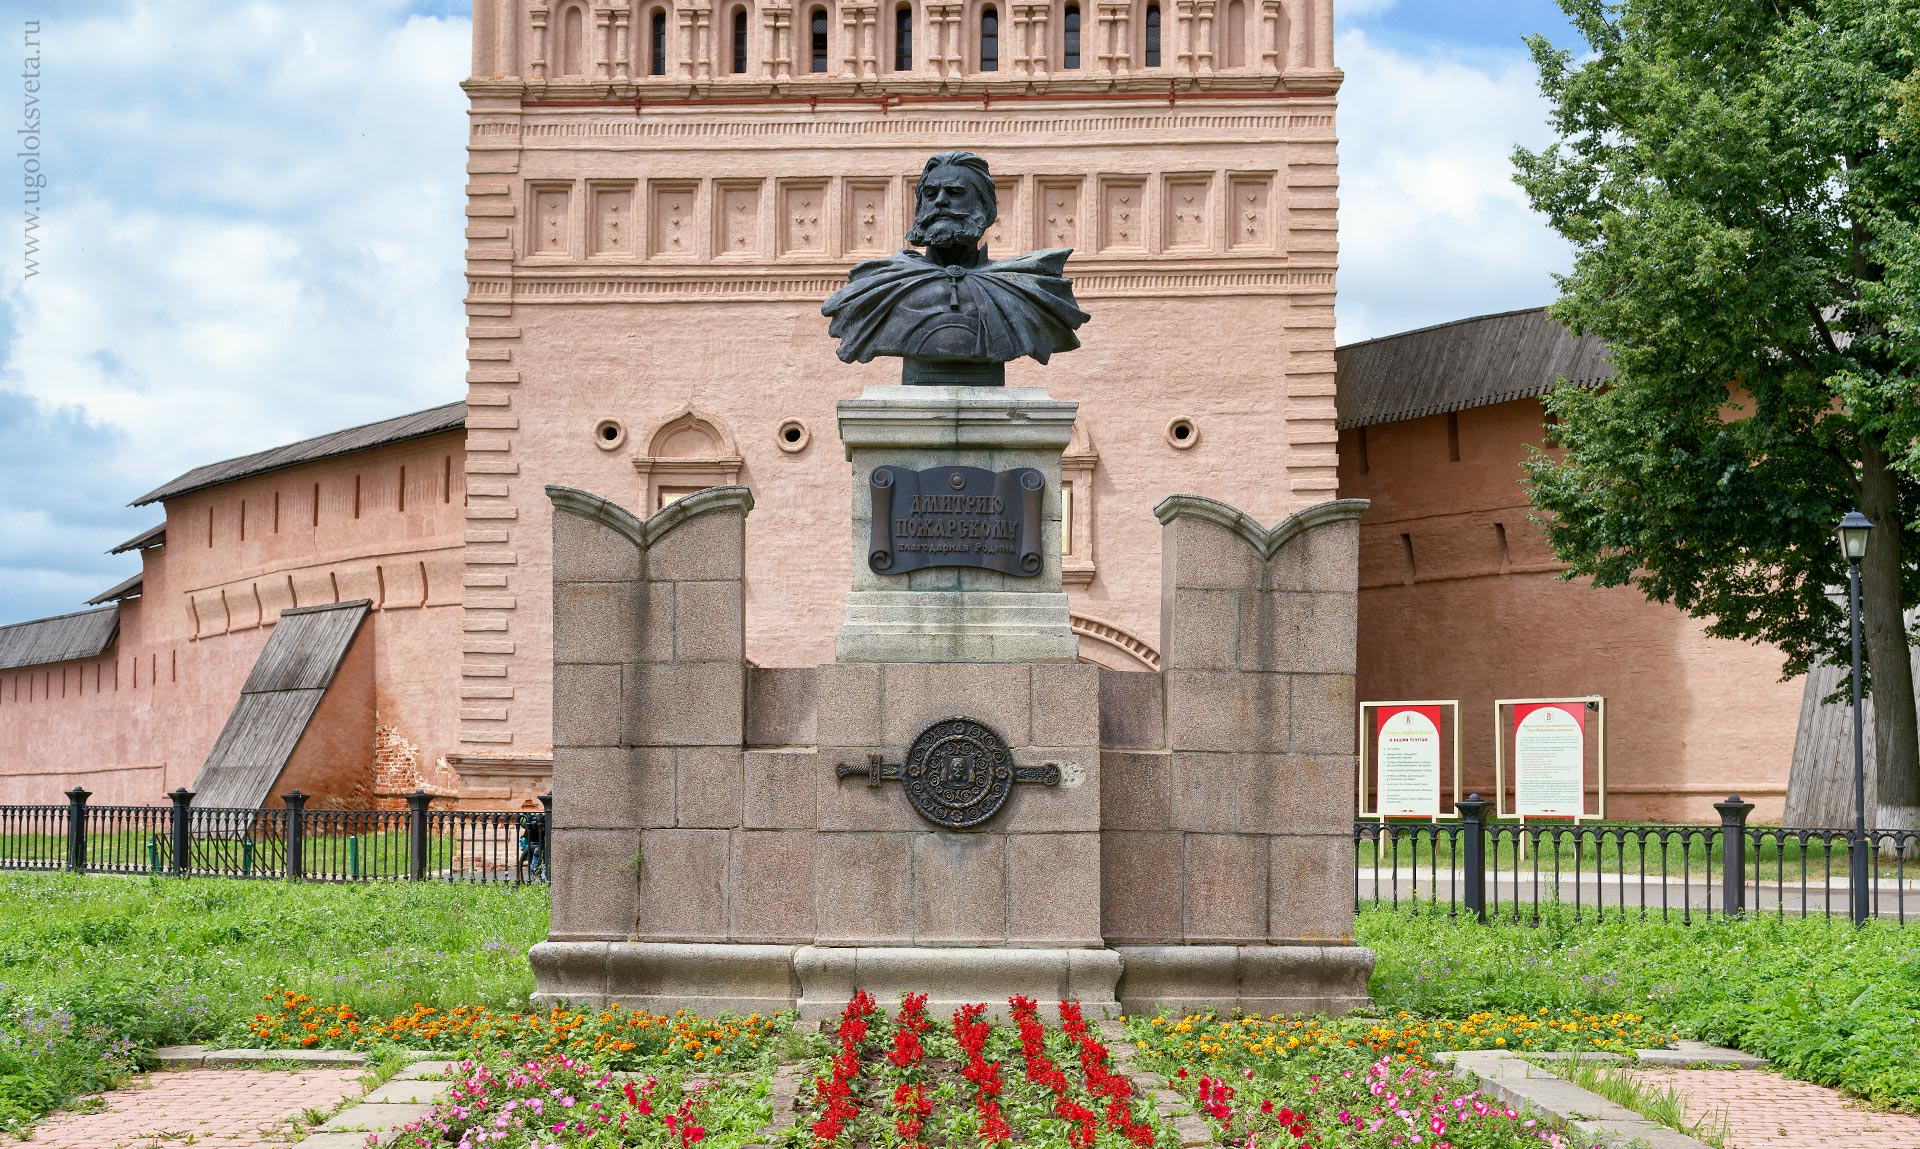 Памятник князю Дмитрию Михайловичу Пожарскому в Суздале у входа в Спасо-Евфимиев монастырь.